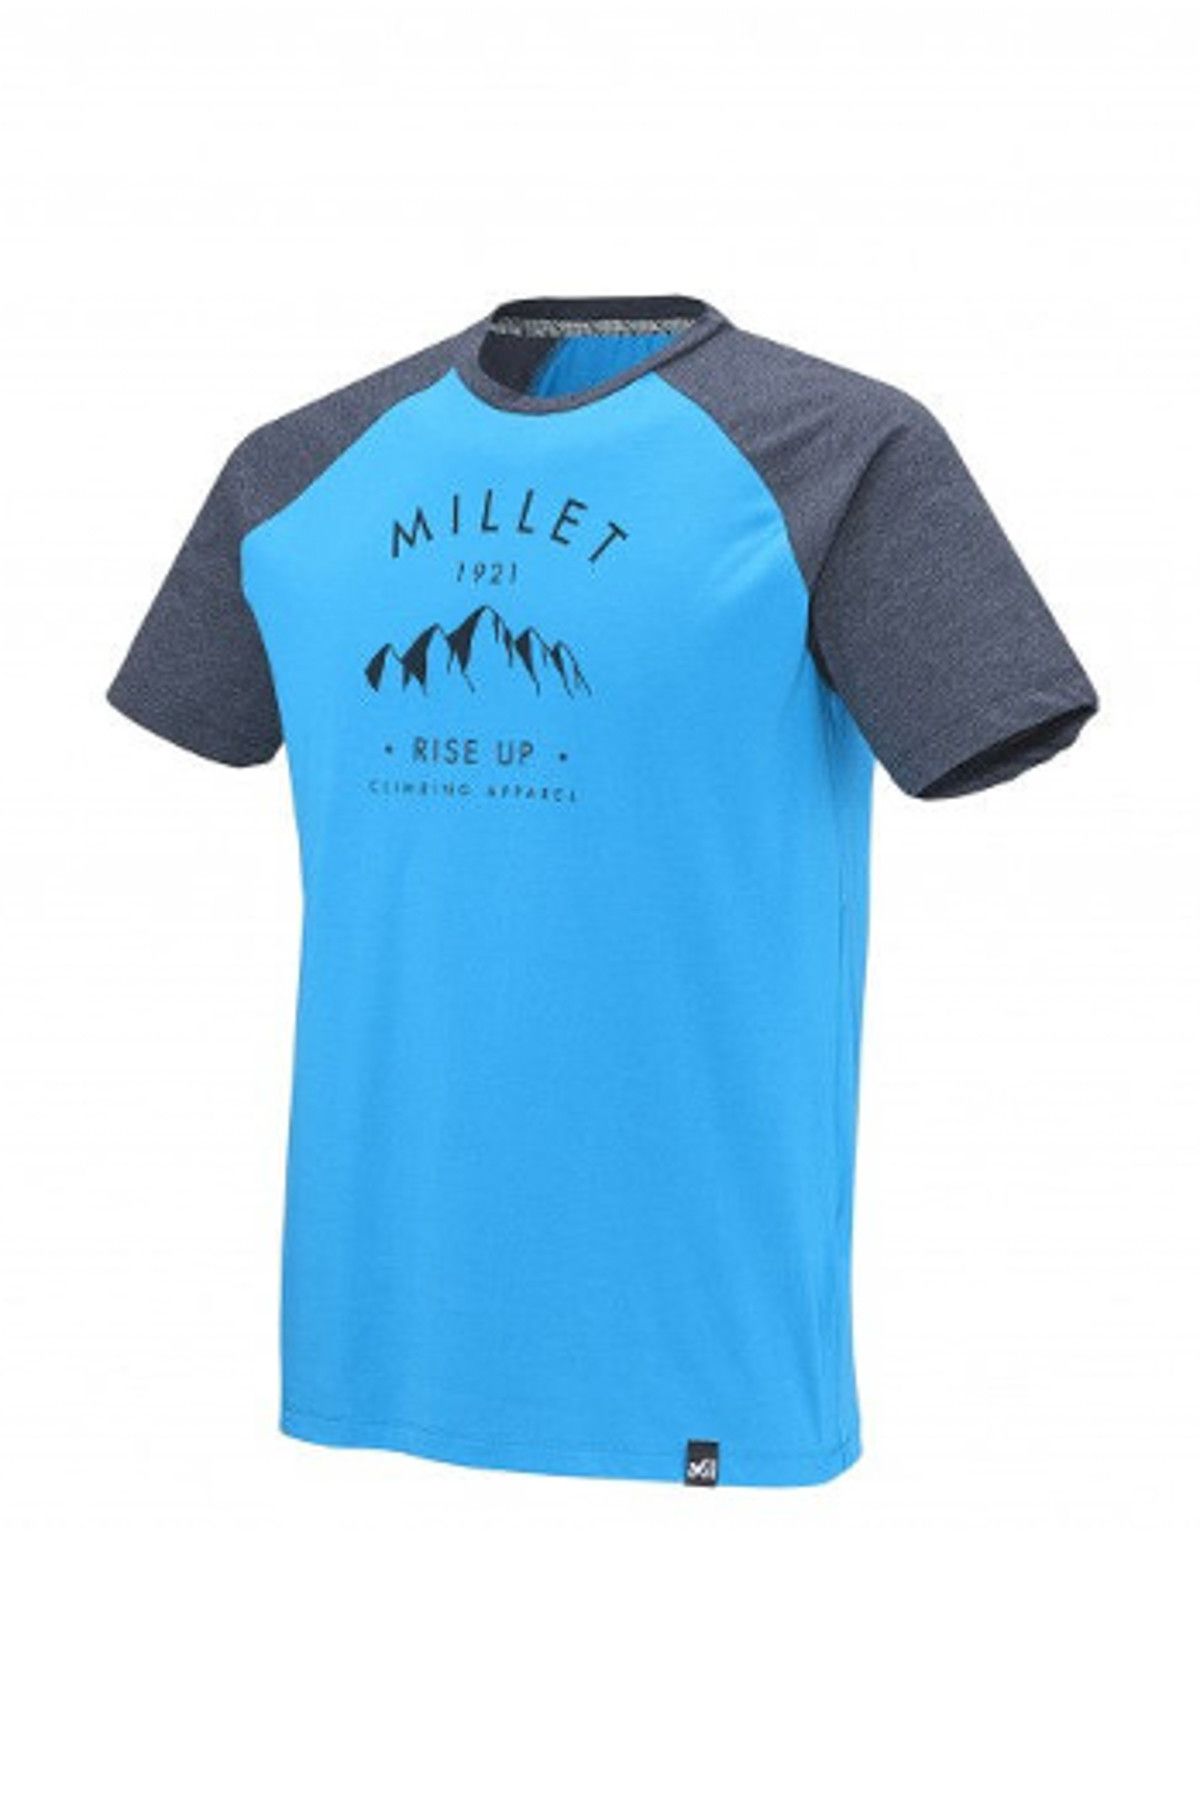 Millet Rise Up Climbing Erkek T-Shirt Miv7219